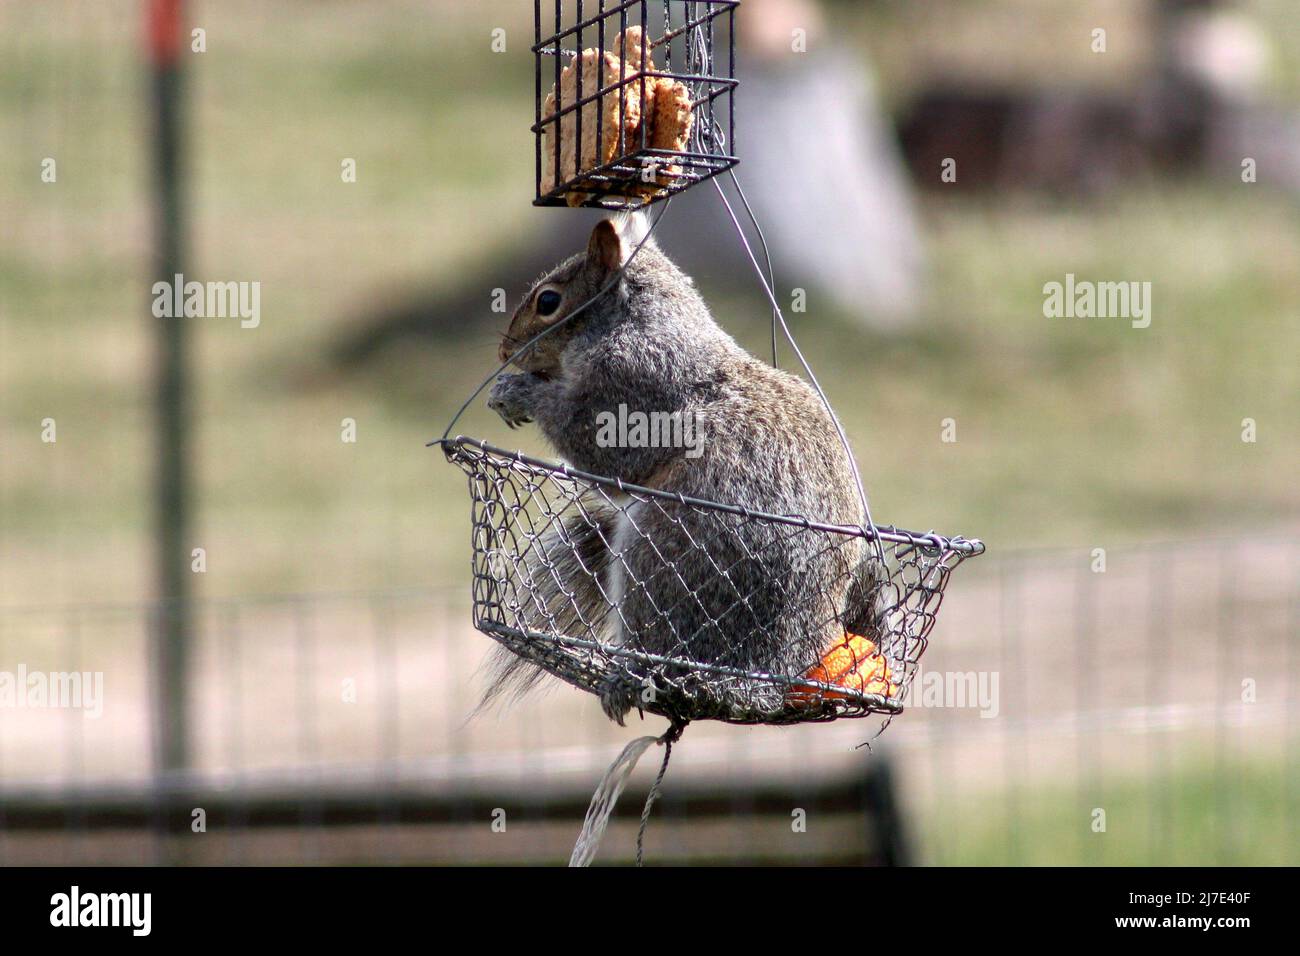 Uno scoiattolo grigio siede in un cestino, mangiando il pane Foto Stock